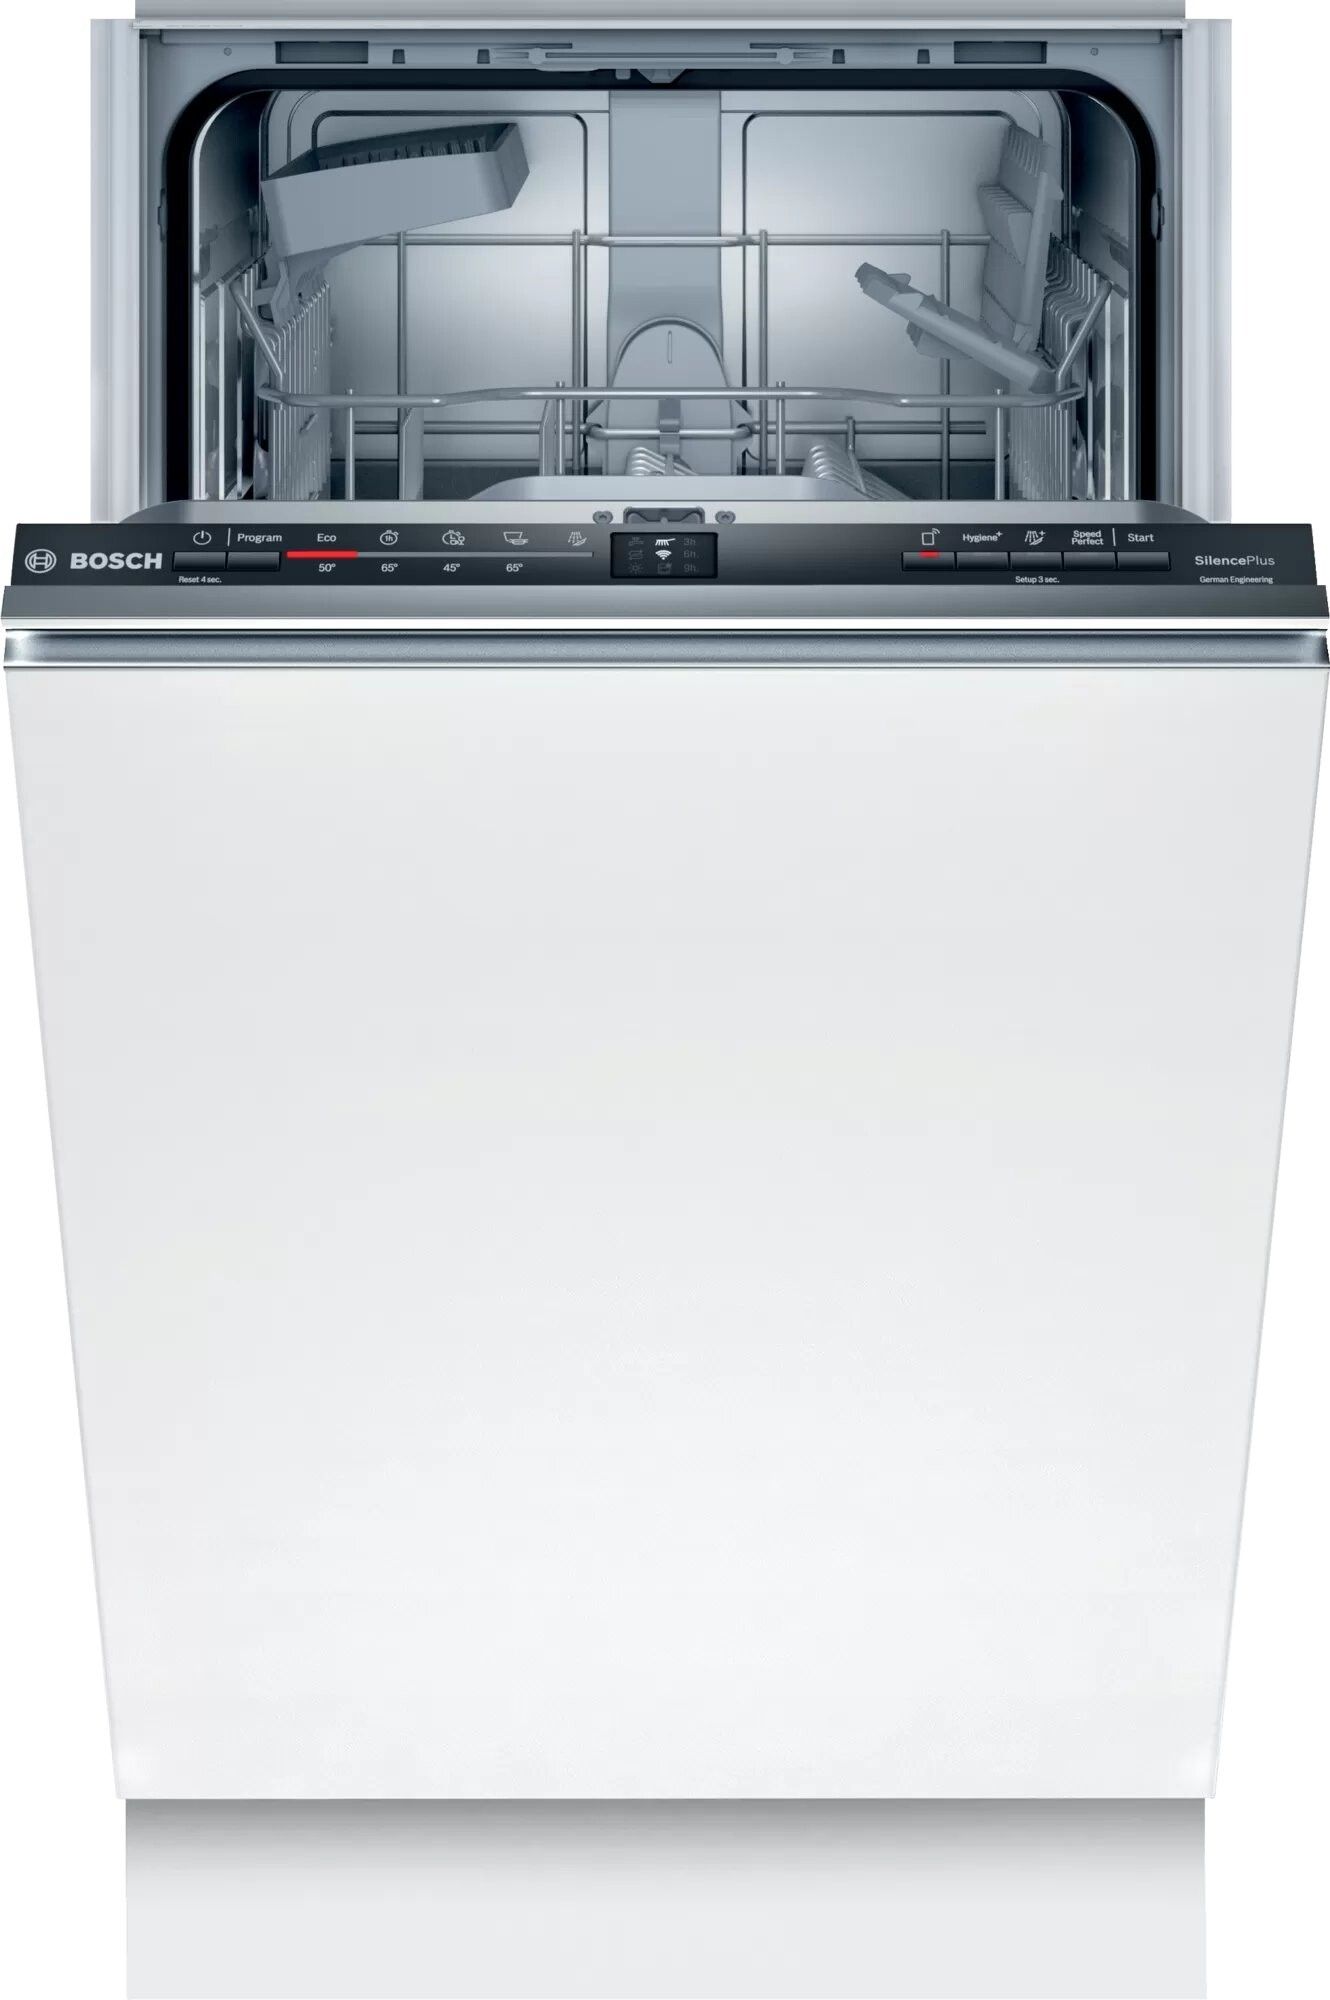 Встраиваемая посудомоечная машина Bosch smv4hvx31e. Посудомоечная машина Electrolux ESL 94585 ro. Bosch spv66mx10r. Посудомоечная машина Bosch spv2imy2er.